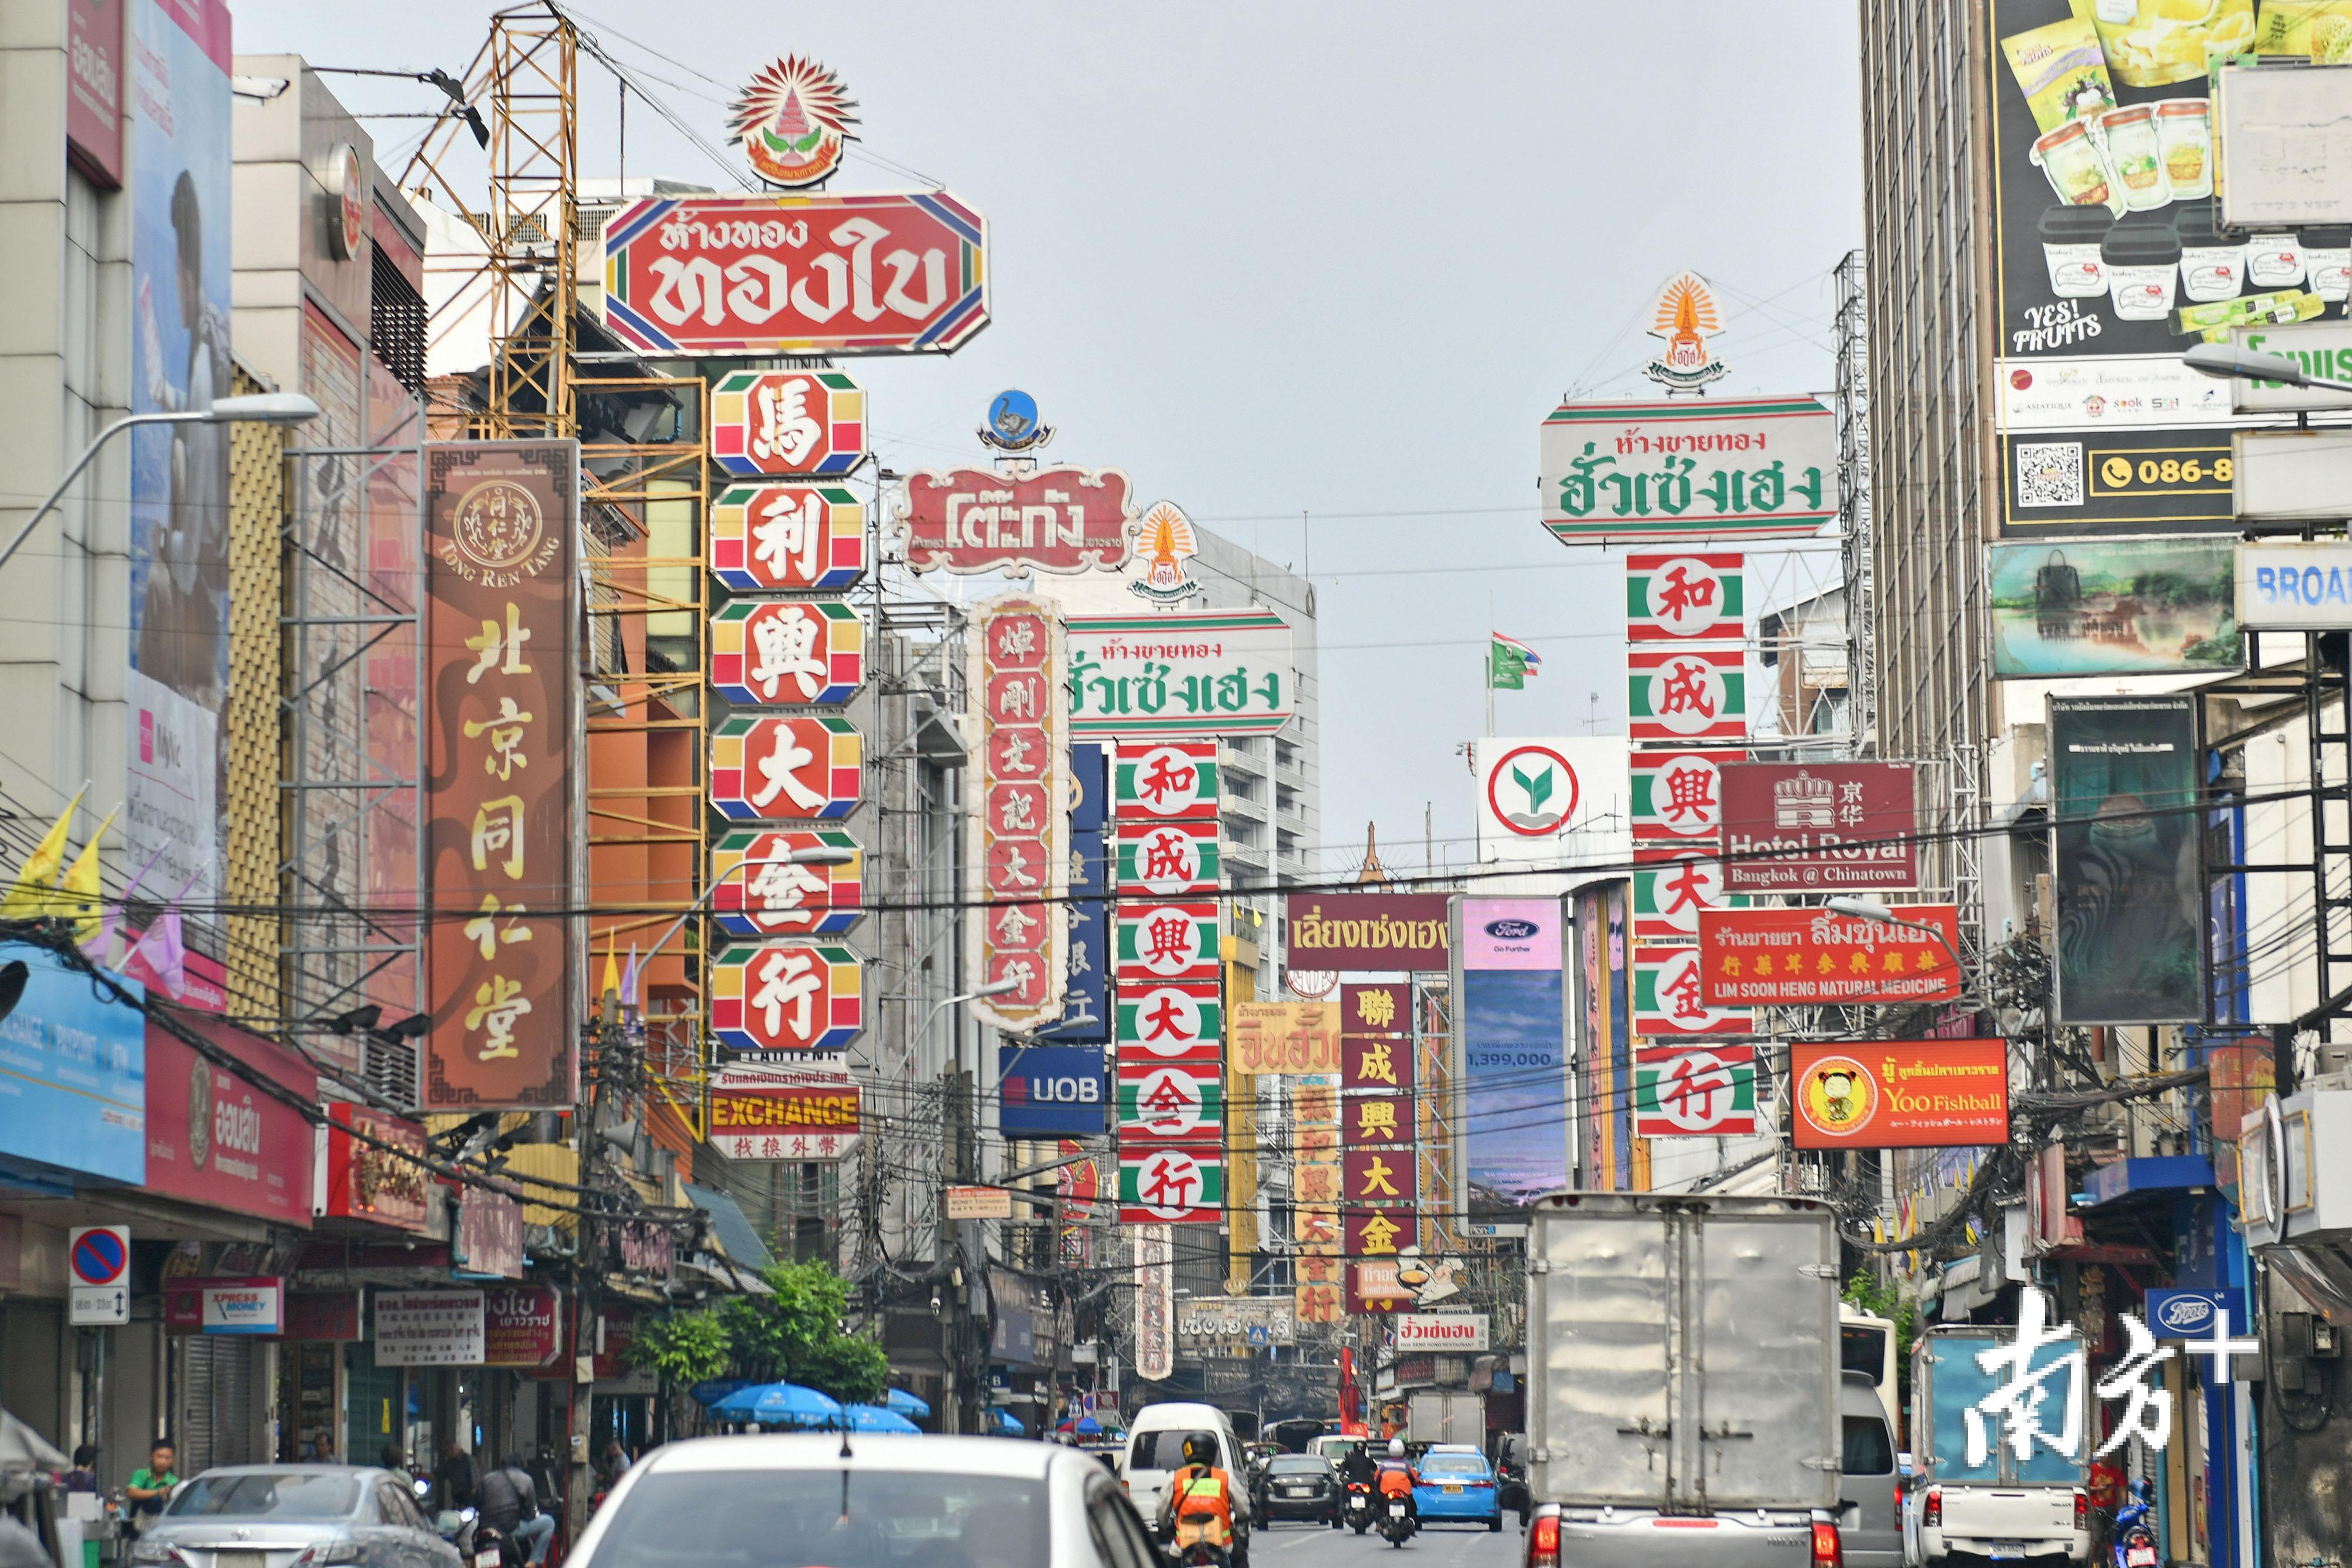 泰国曼谷唐人街上中文招牌鳞次栉比